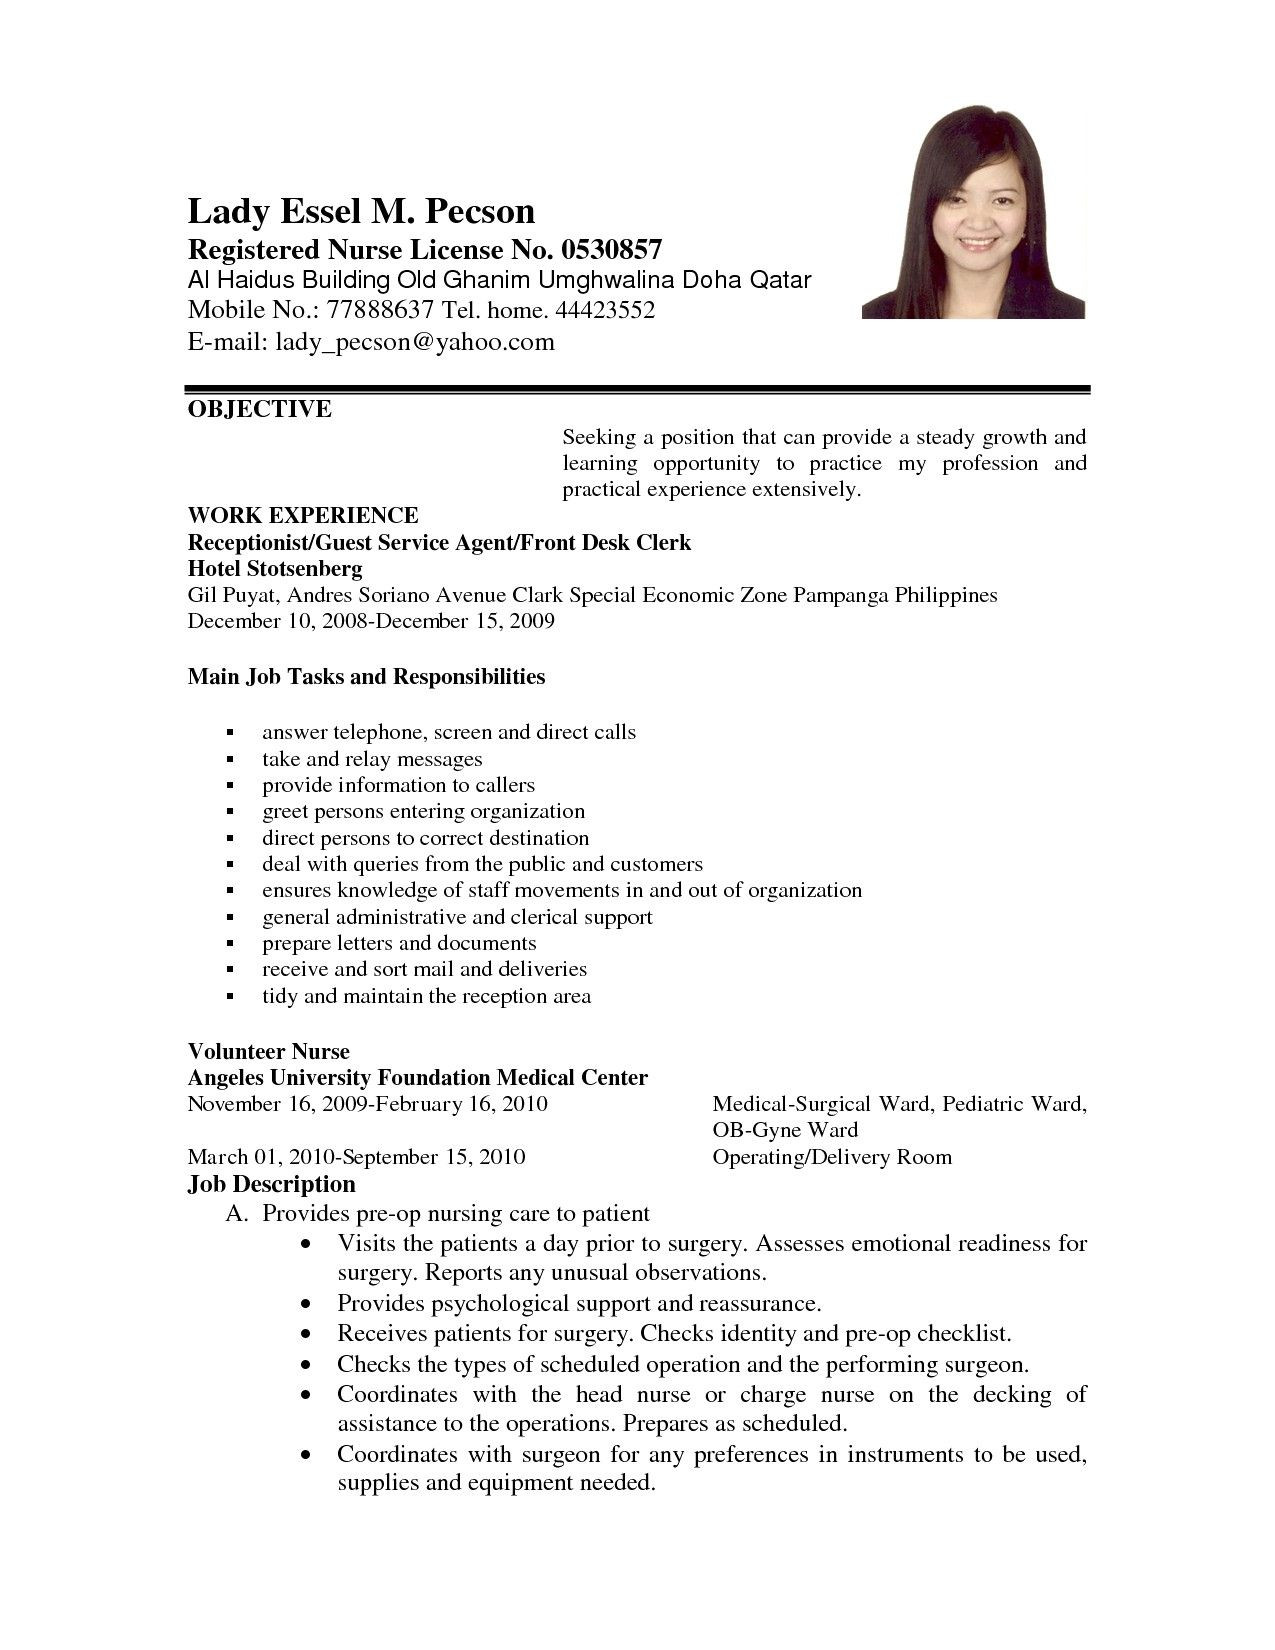 Resume Career Objective Samples for Freshers Career Objective Resume Examples Awesome Example Applying for Job …